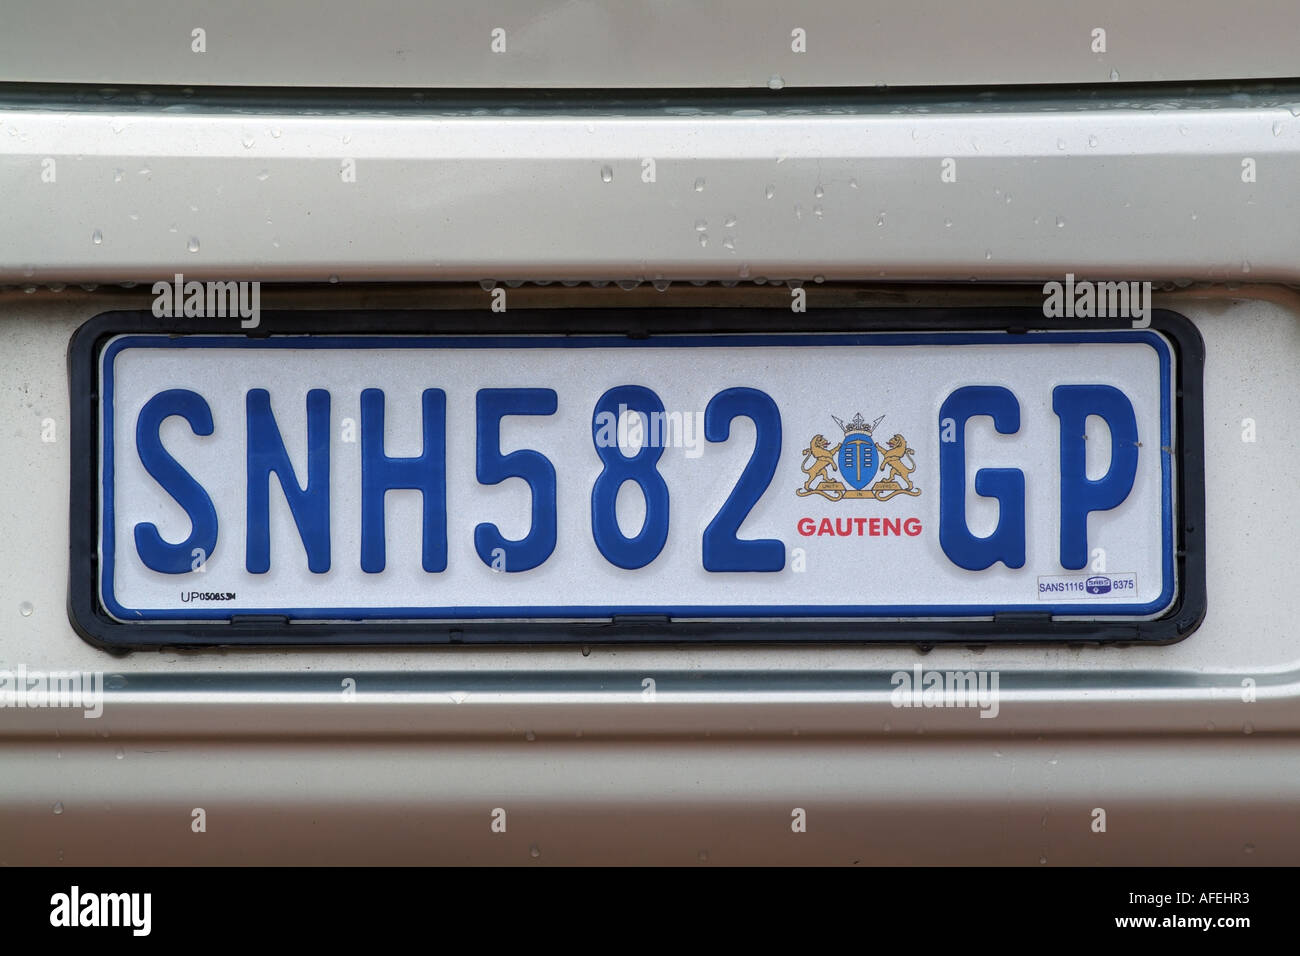 Plaque d'une voiture de l'Afrique du Sud.gp représente la région de Johannesburg Gauteng Banque D'Images